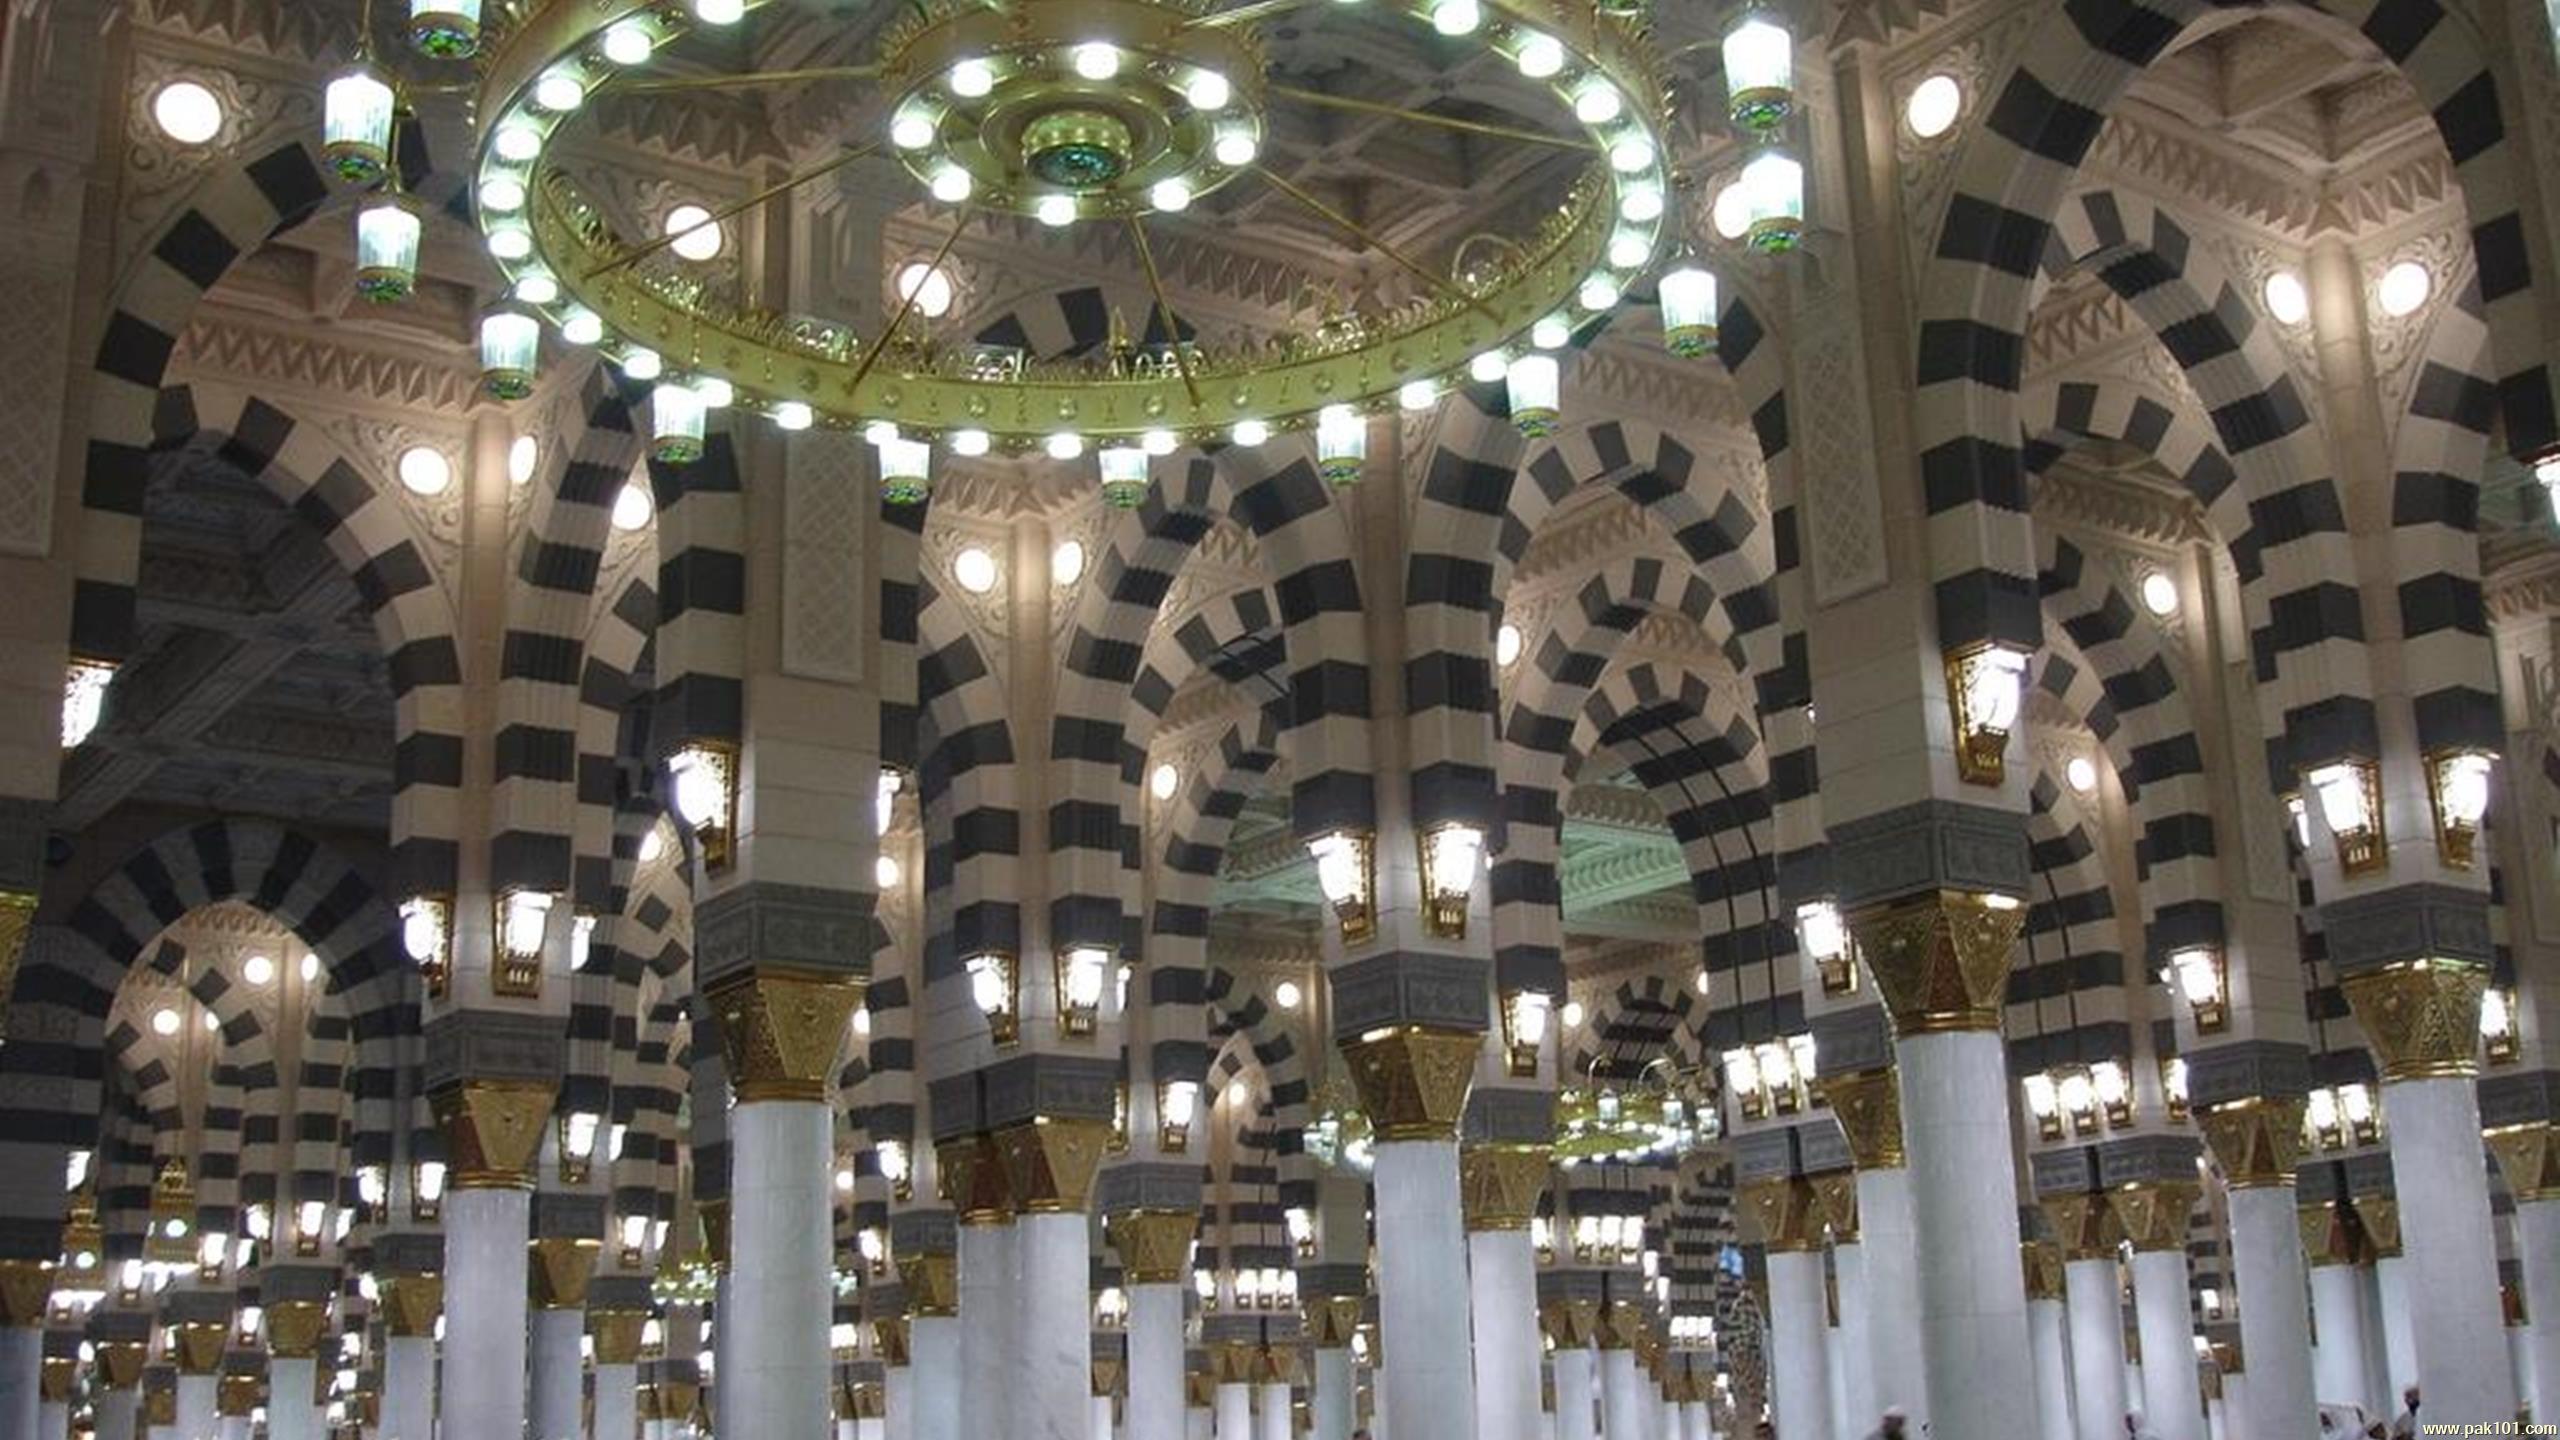 Wallpapers Islamic Masjid Al Nabawi In Madinah Saudi